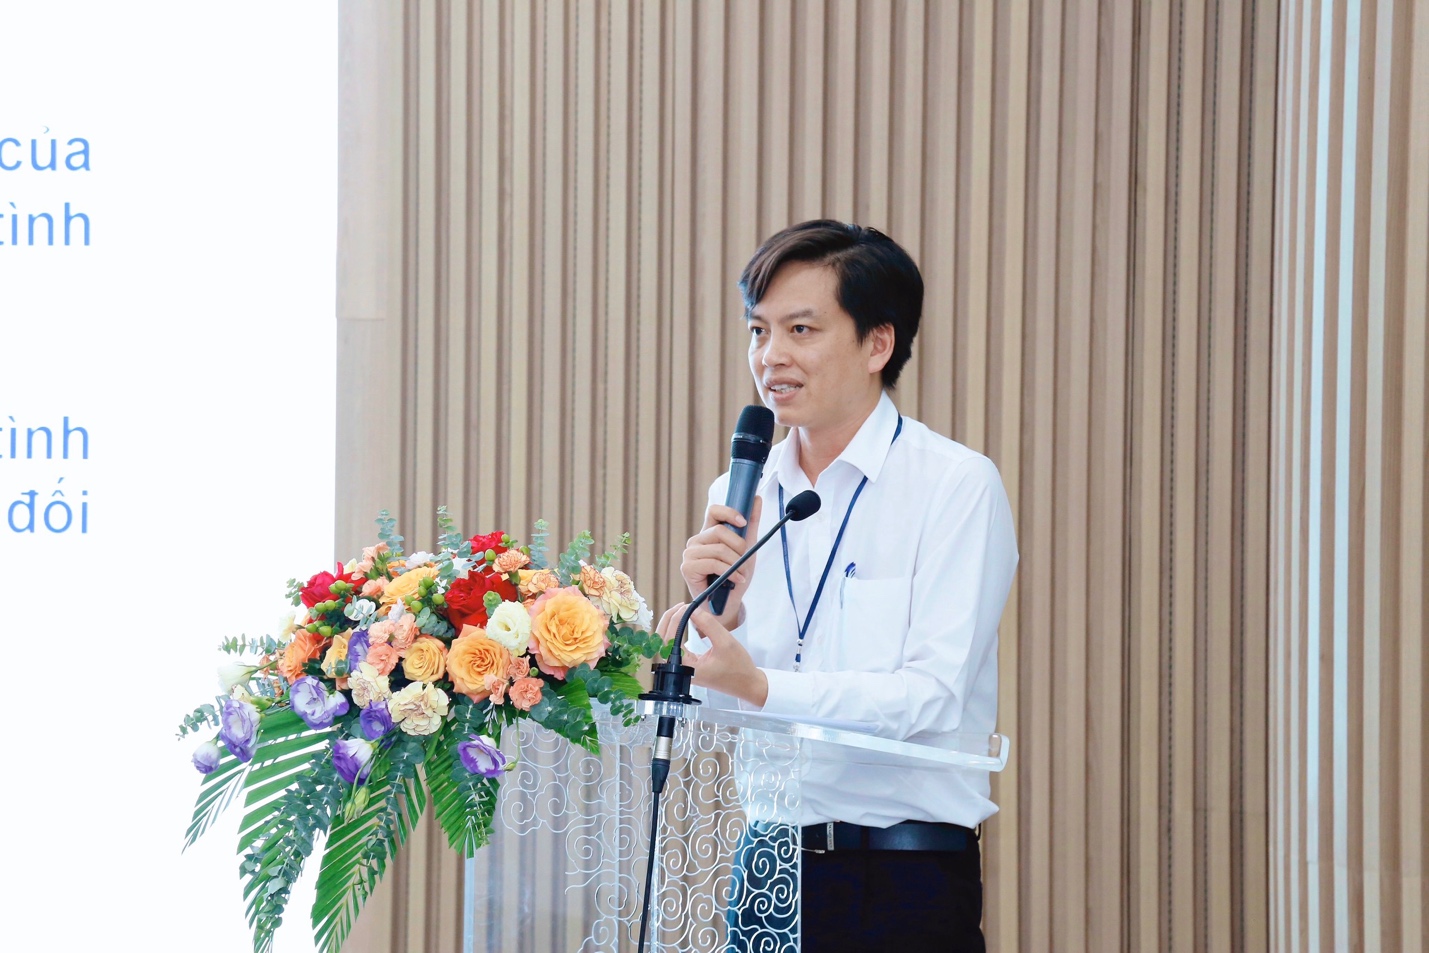 Tổng Công ty Hàng không Việt Nam: Nâng cao năng lực công tác vì sự tiến bộ phụ nữ - Ảnh 3.